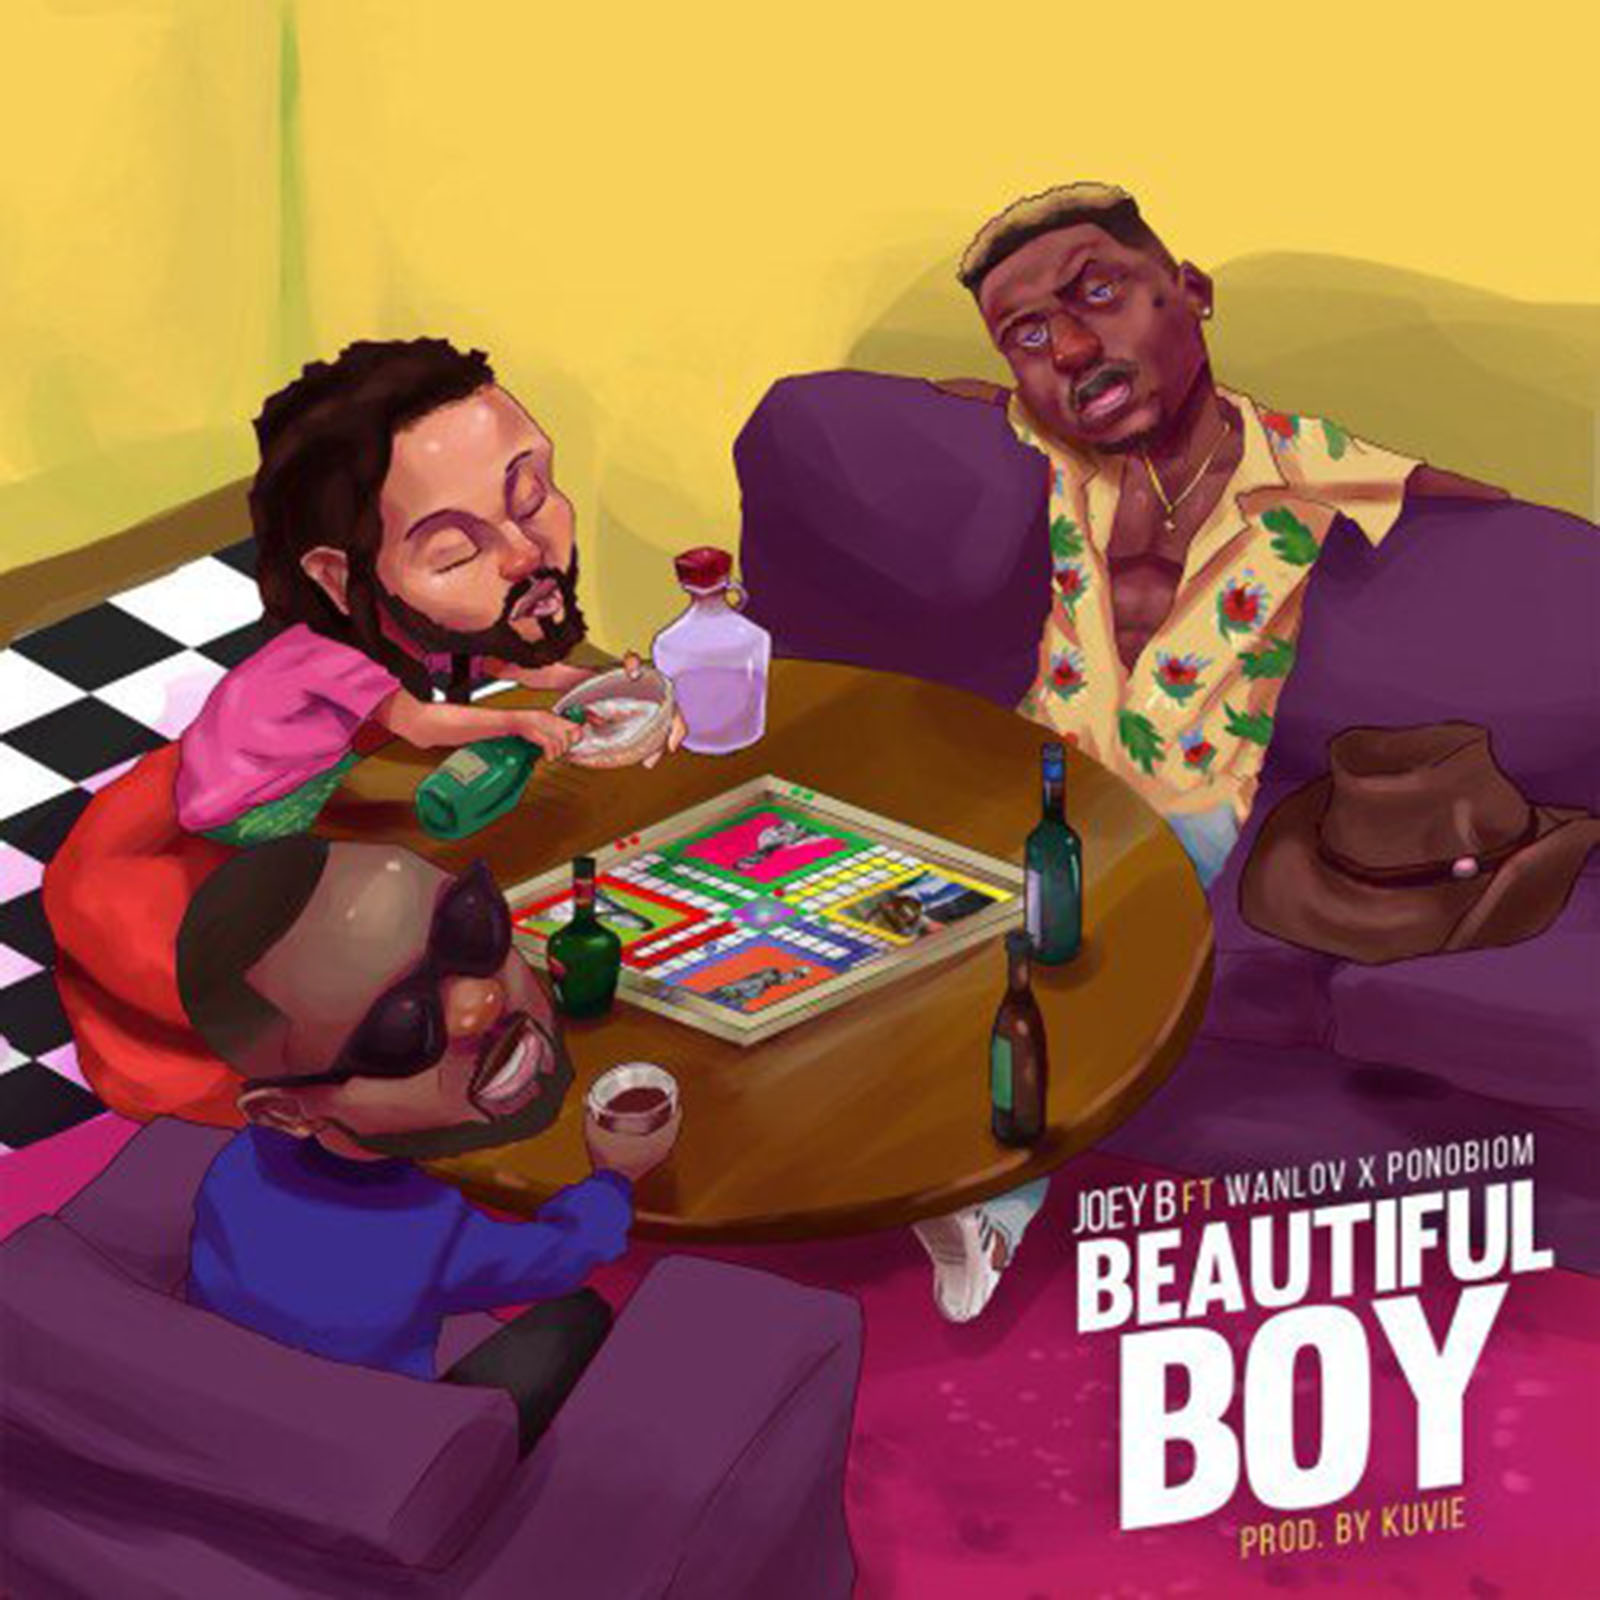 Beautiful Boy by Joey B feat. Yaa Pono & Wanlov The Kuborlor